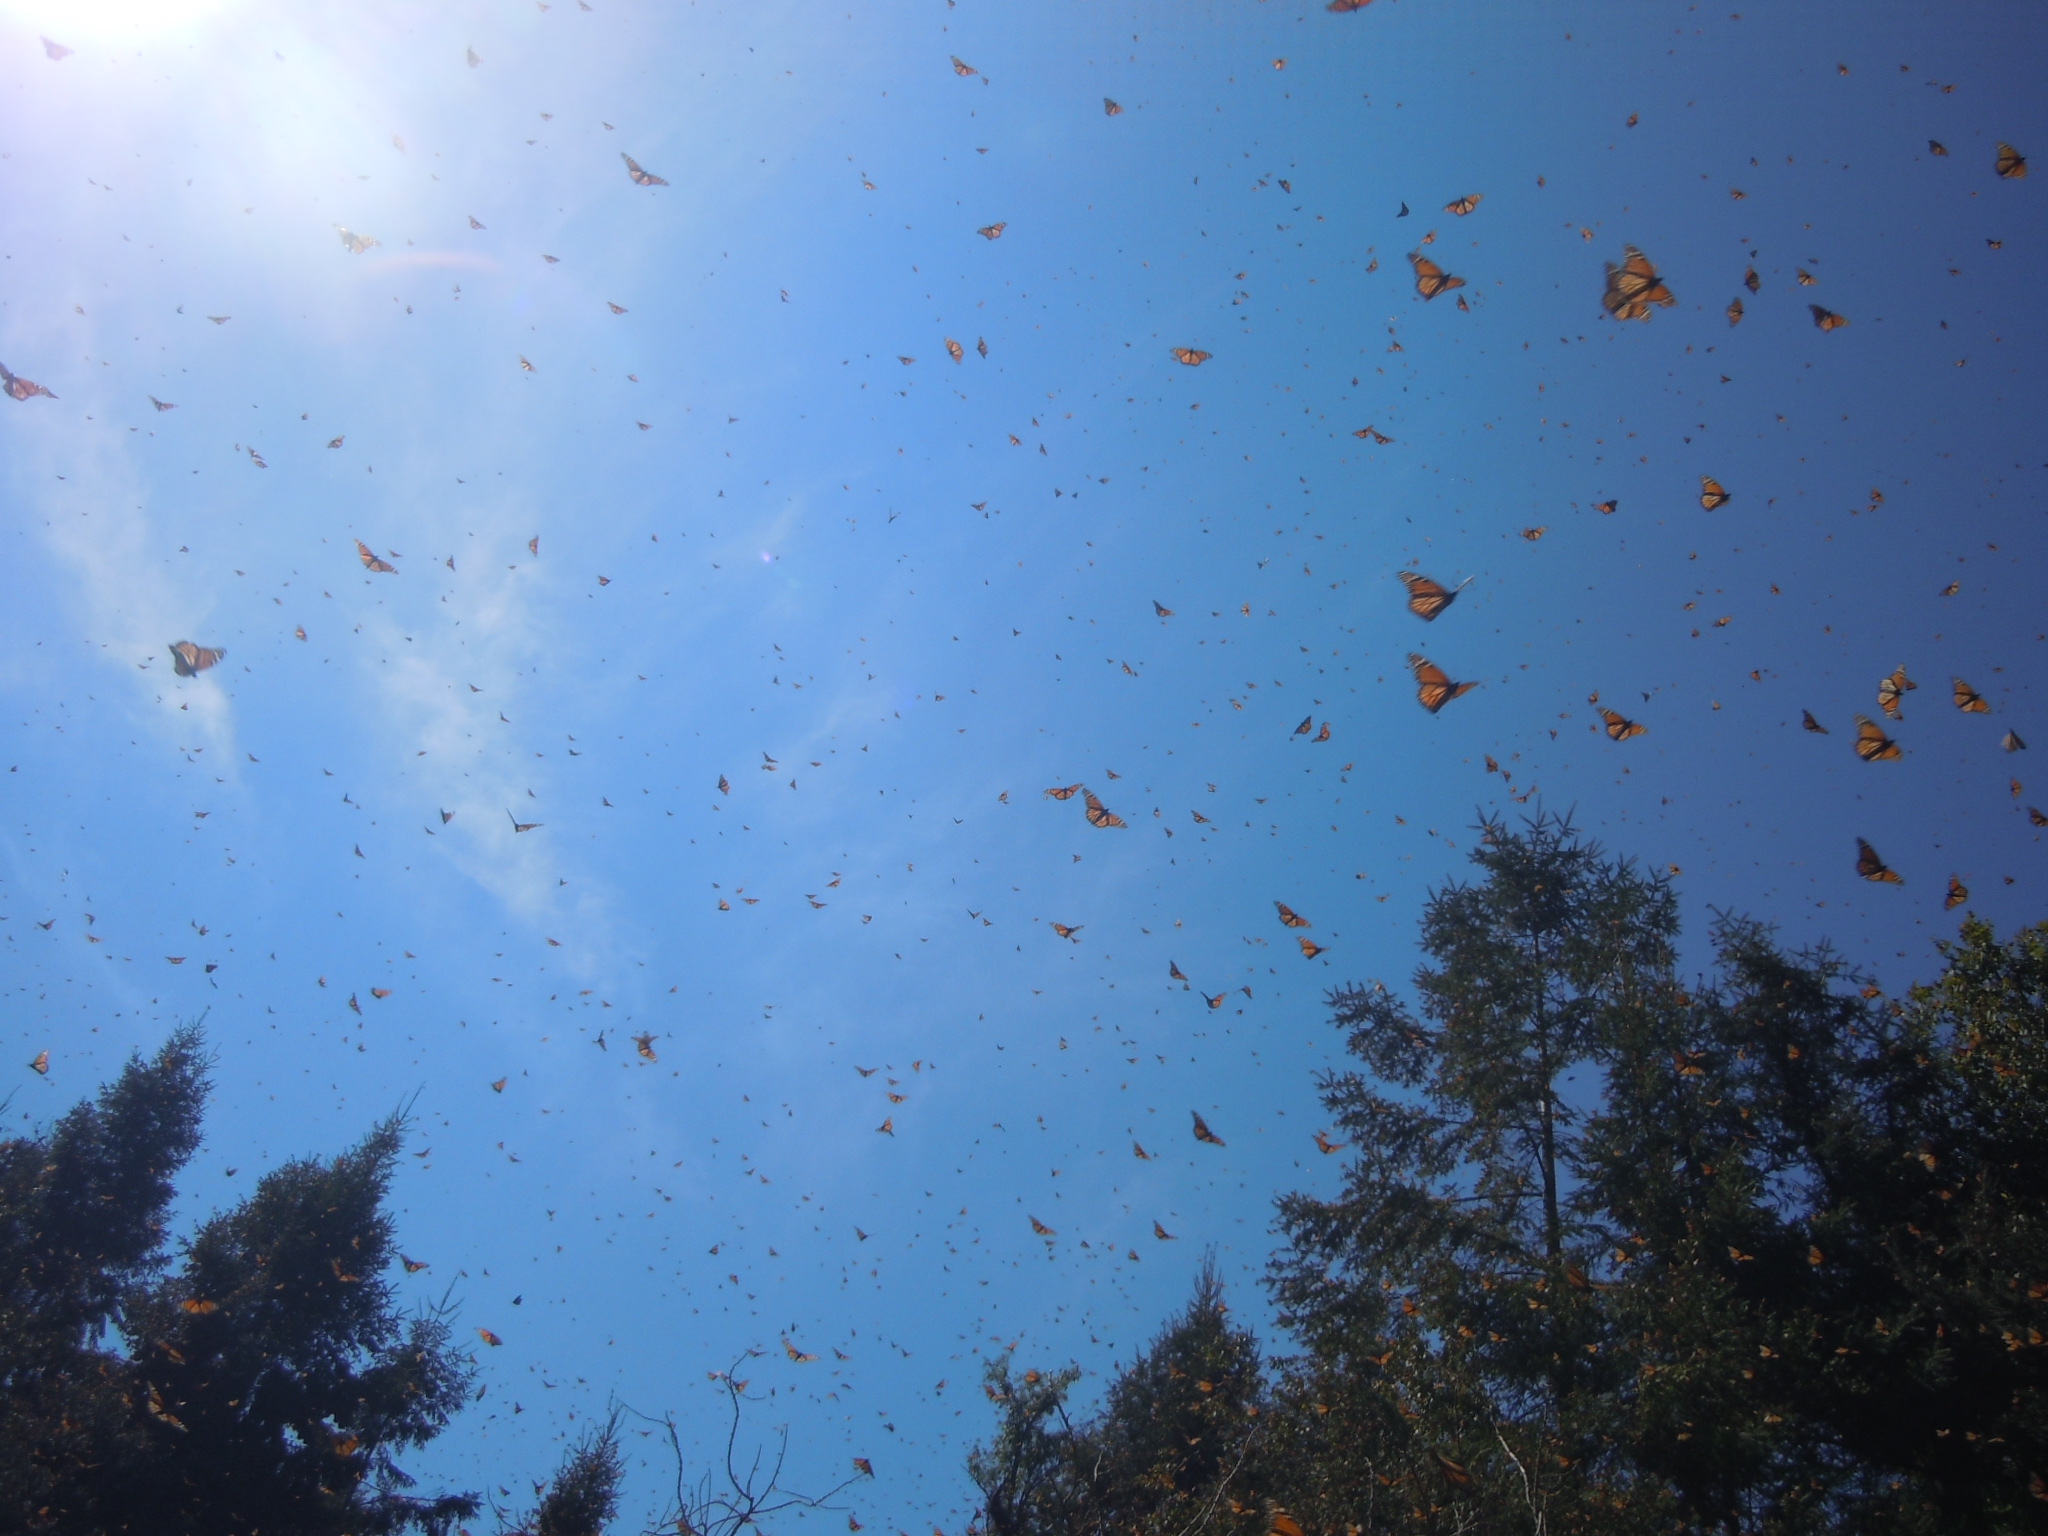 Monarch butterflies at Cerro Pelon, Michoacan